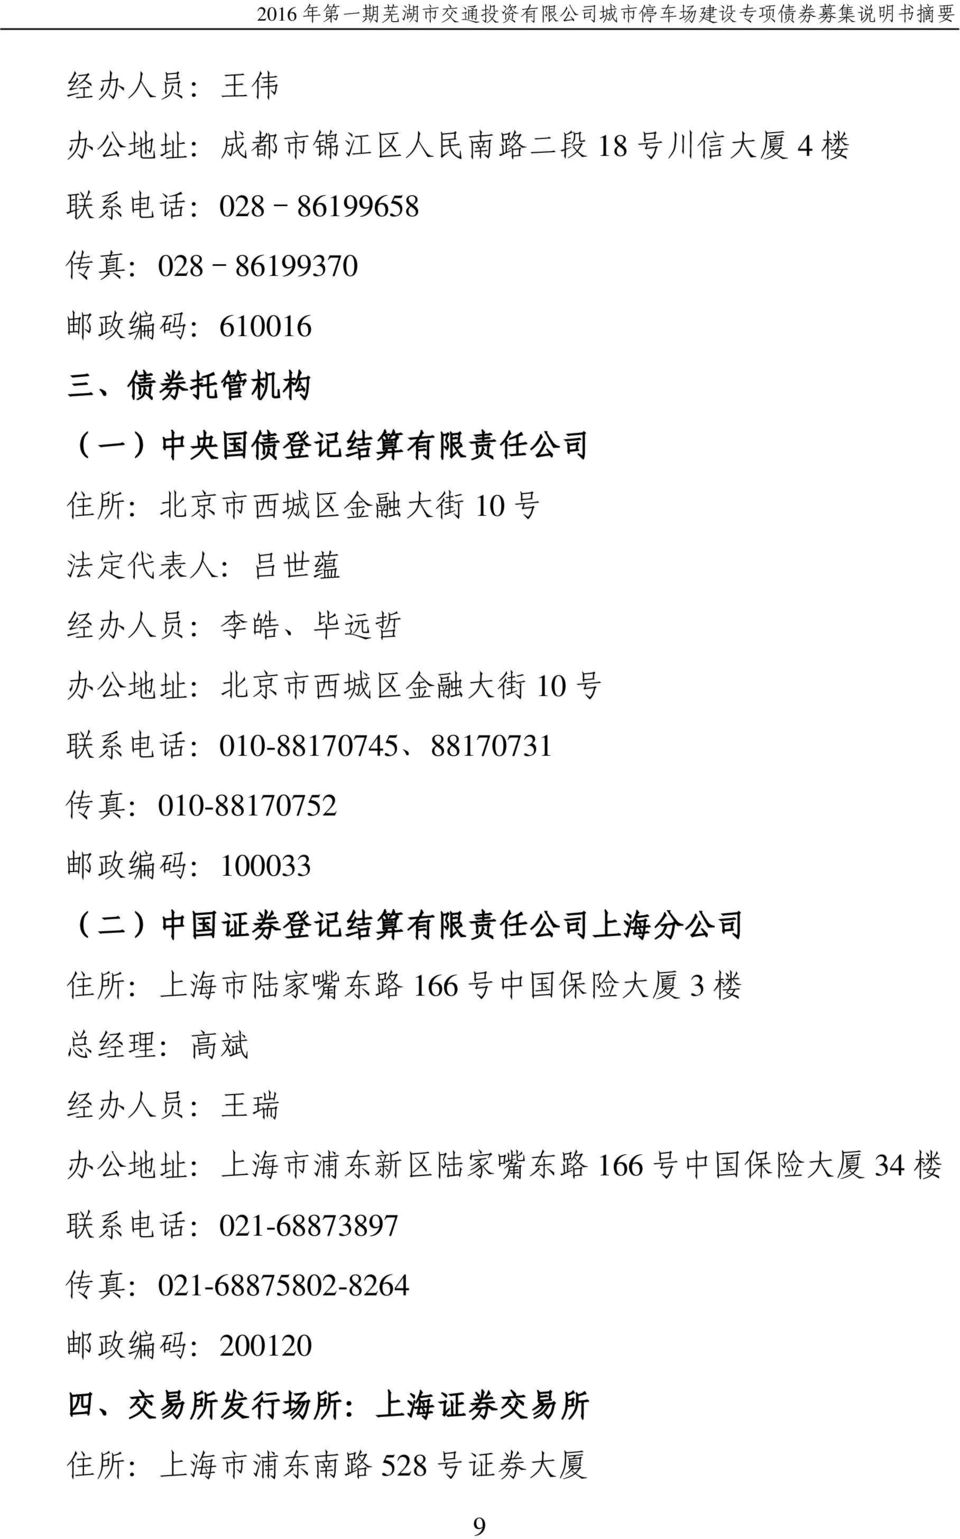 :010-88170752 邮 政 编 码 :100033 ( 二 ) 中 国 证 券 登 记 结 算 有 限 责 任 公 司 上 海 分 公 司 住 所 : 上 海 市 陆 家 嘴 东 路 166 号 中 国 保 险 大 厦 3 楼 总 经 理 : 高 斌 经 办 人 员 : 王 瑞 办 公 地 址 : 上 海 市